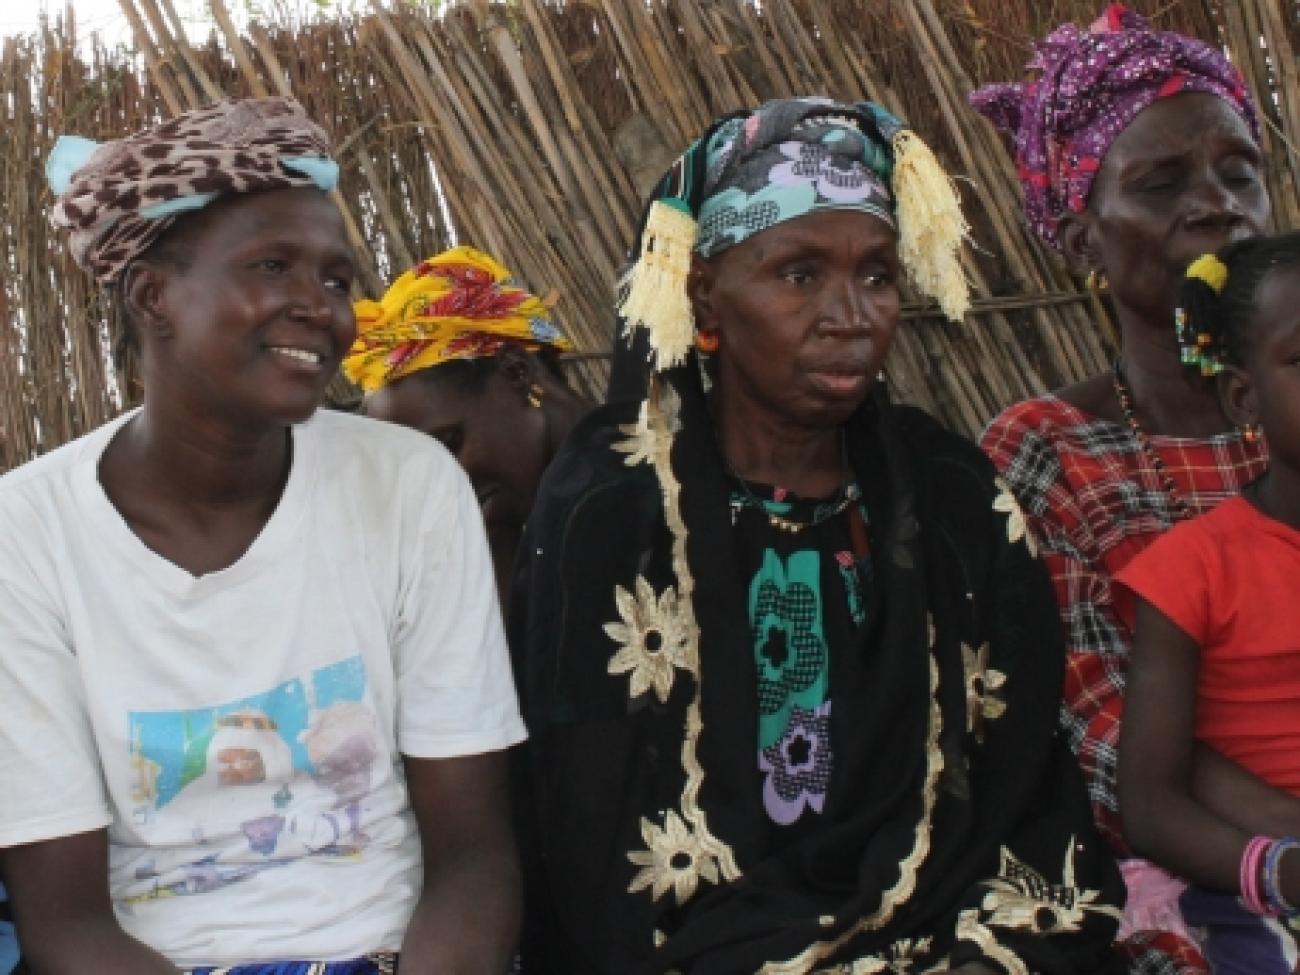 粮农组织与社区合作，设立了名为迪米特拉俱乐部的讨论和行动小组，农村女性和男性可以在这些安全、包容的空间里，寻求社区问题的解决方法。